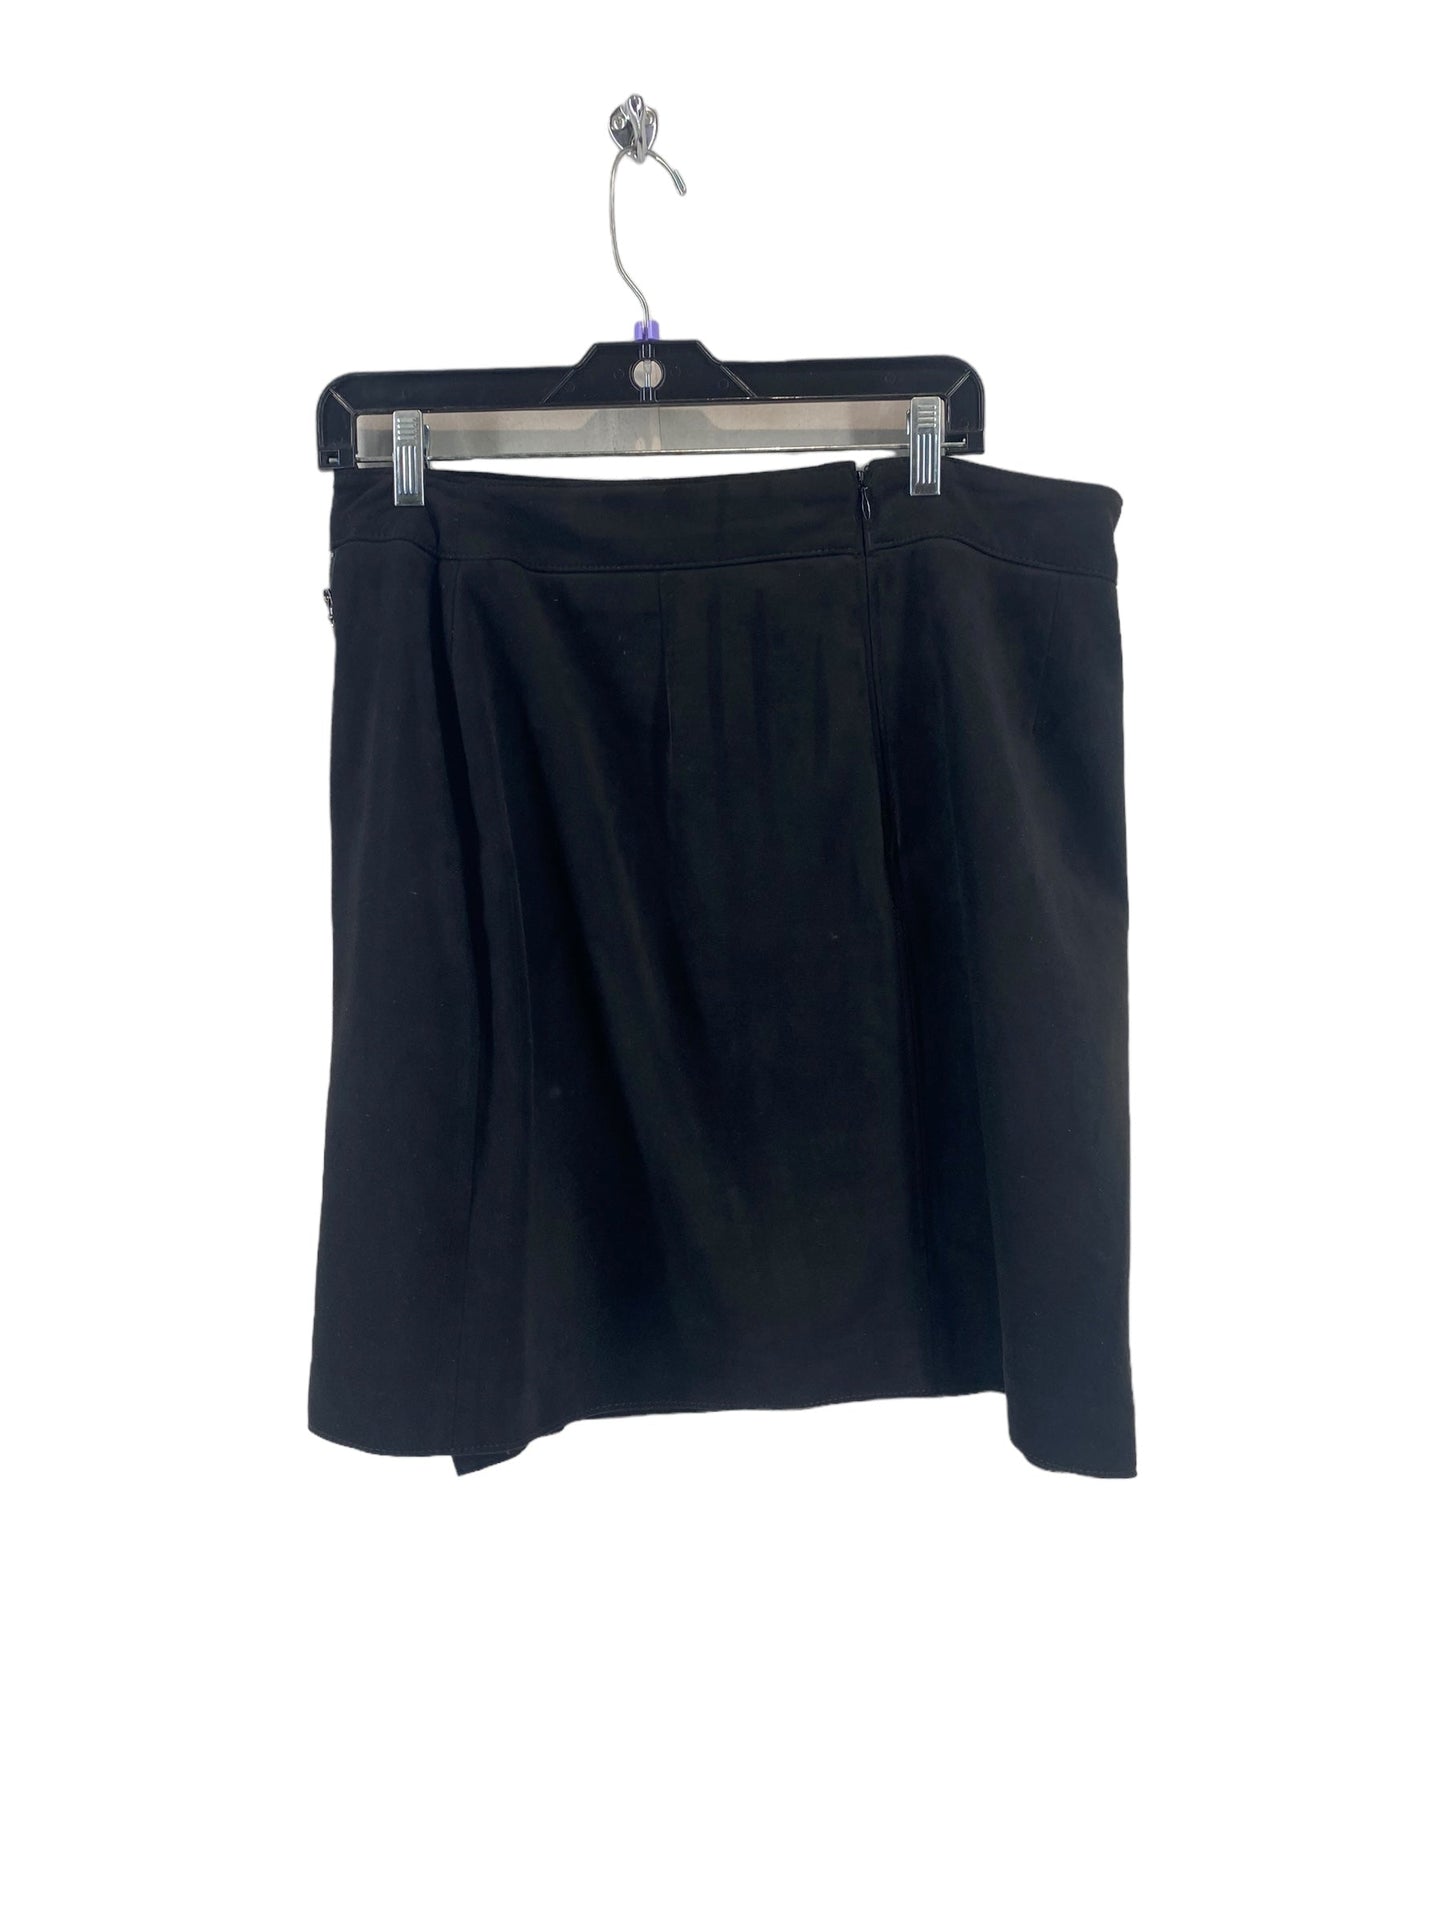 Skirt Mini & Short By White House Black Market  Size: 12